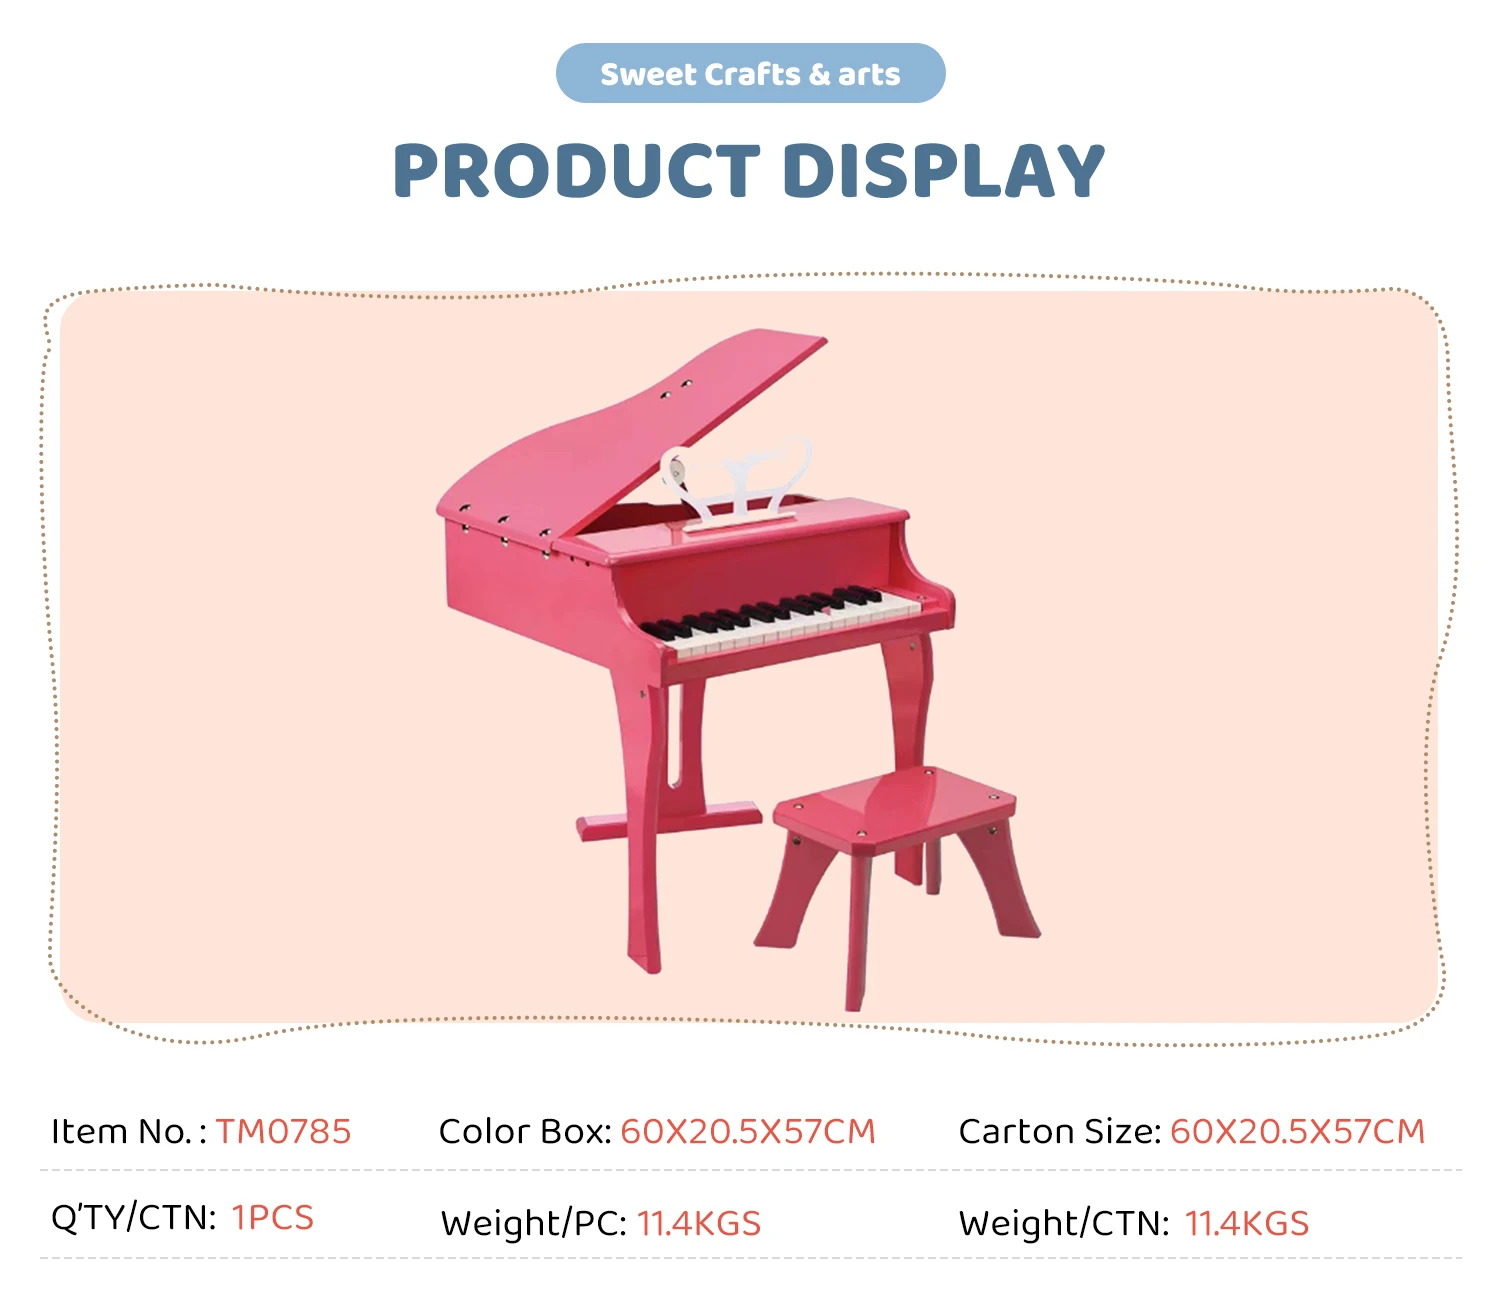 Piano de Madeira Acústico Infantil com 30 Teclas Rosa Instrumentos Musicais  Bambalalão Brinquedos Educativos